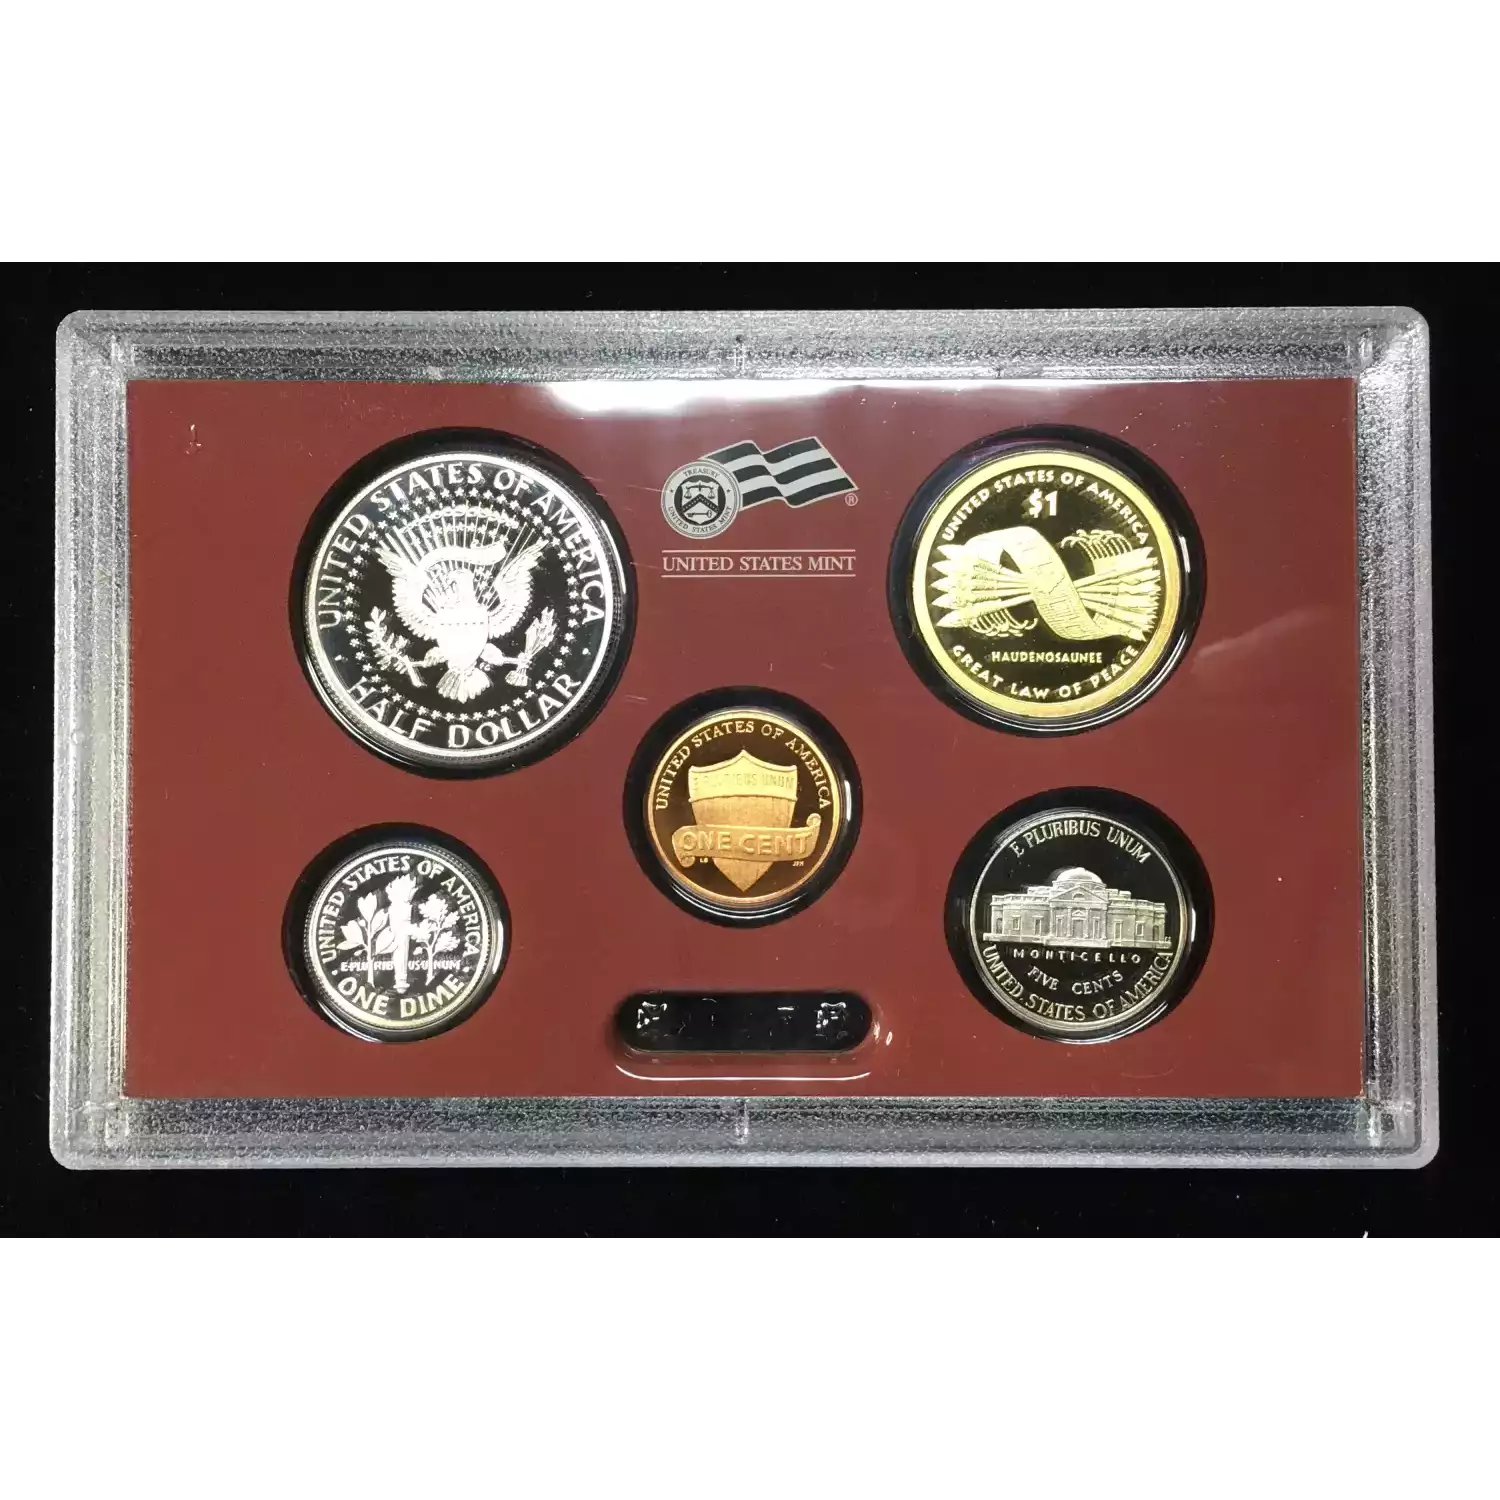 2010-S US Mint Silver Proof Set w OGP - Box & COA